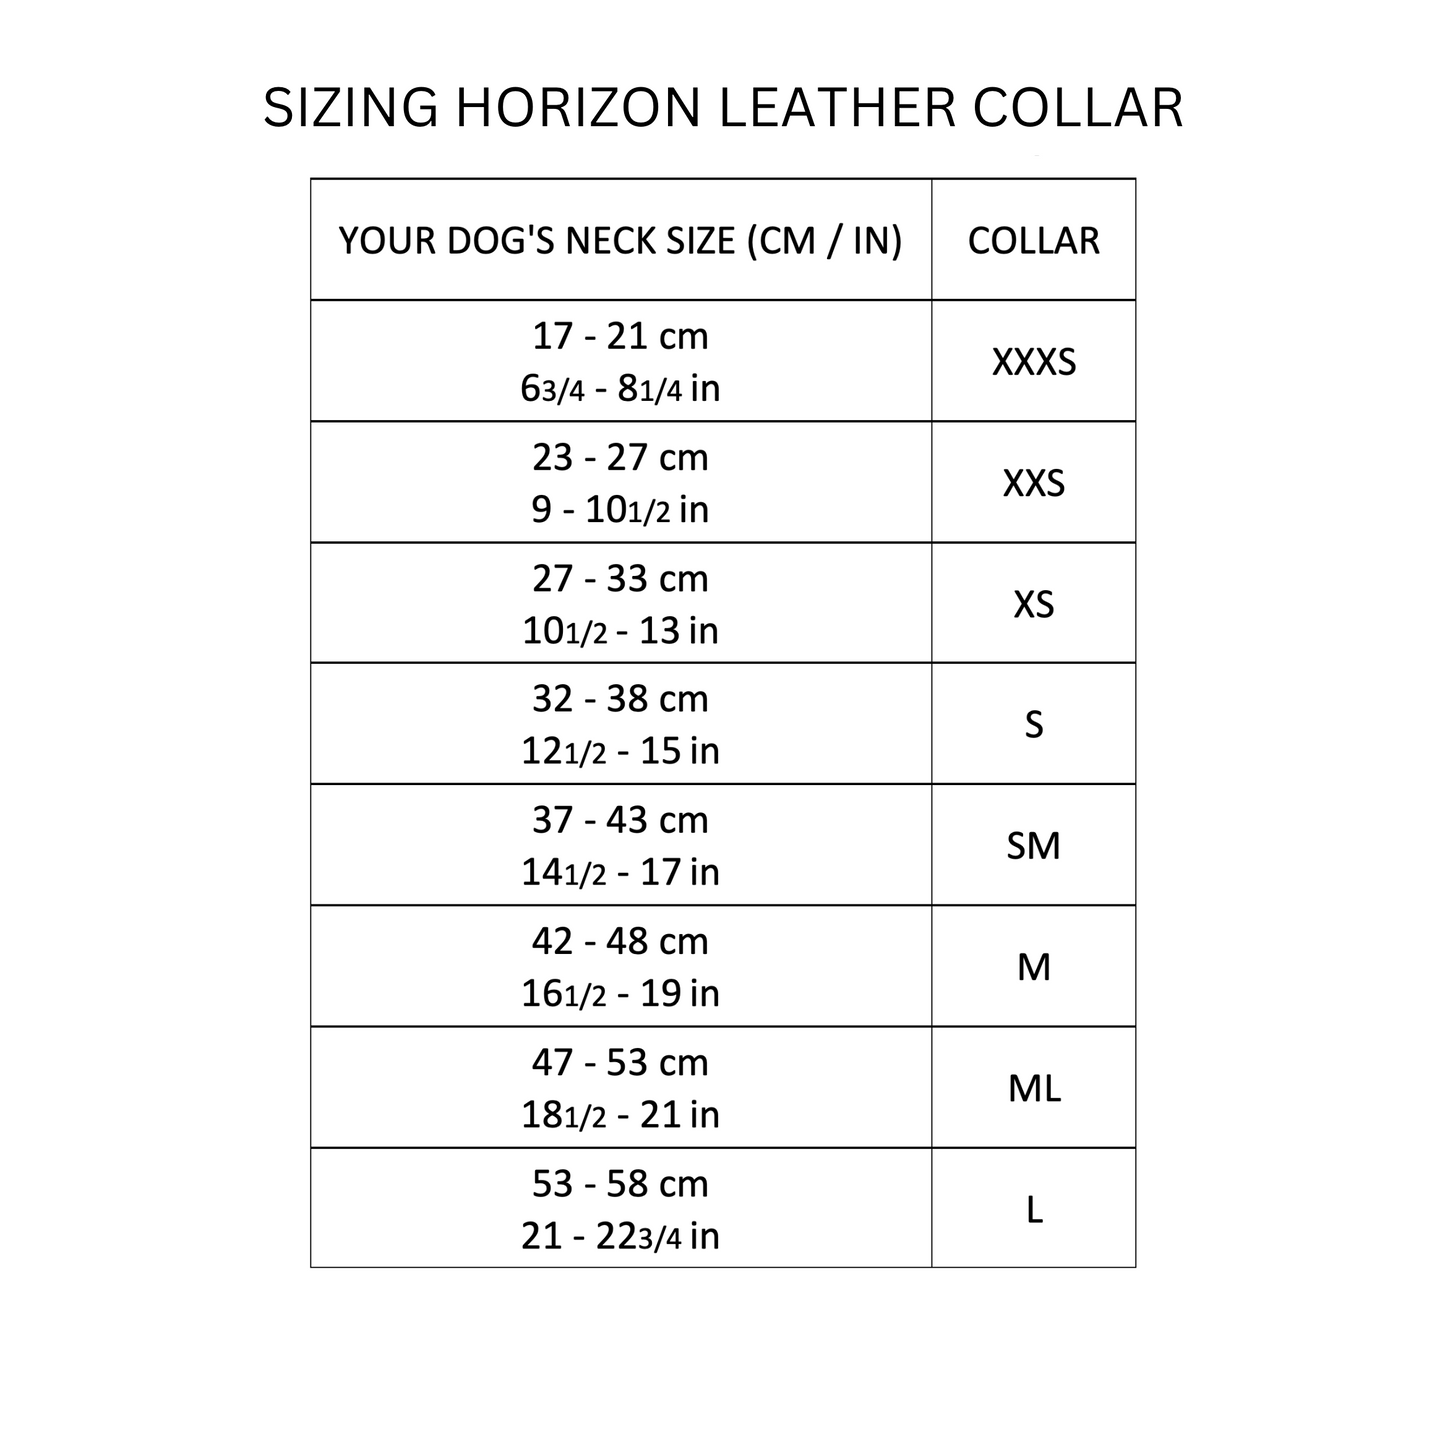 D&H Horizon Hound Collar Purple